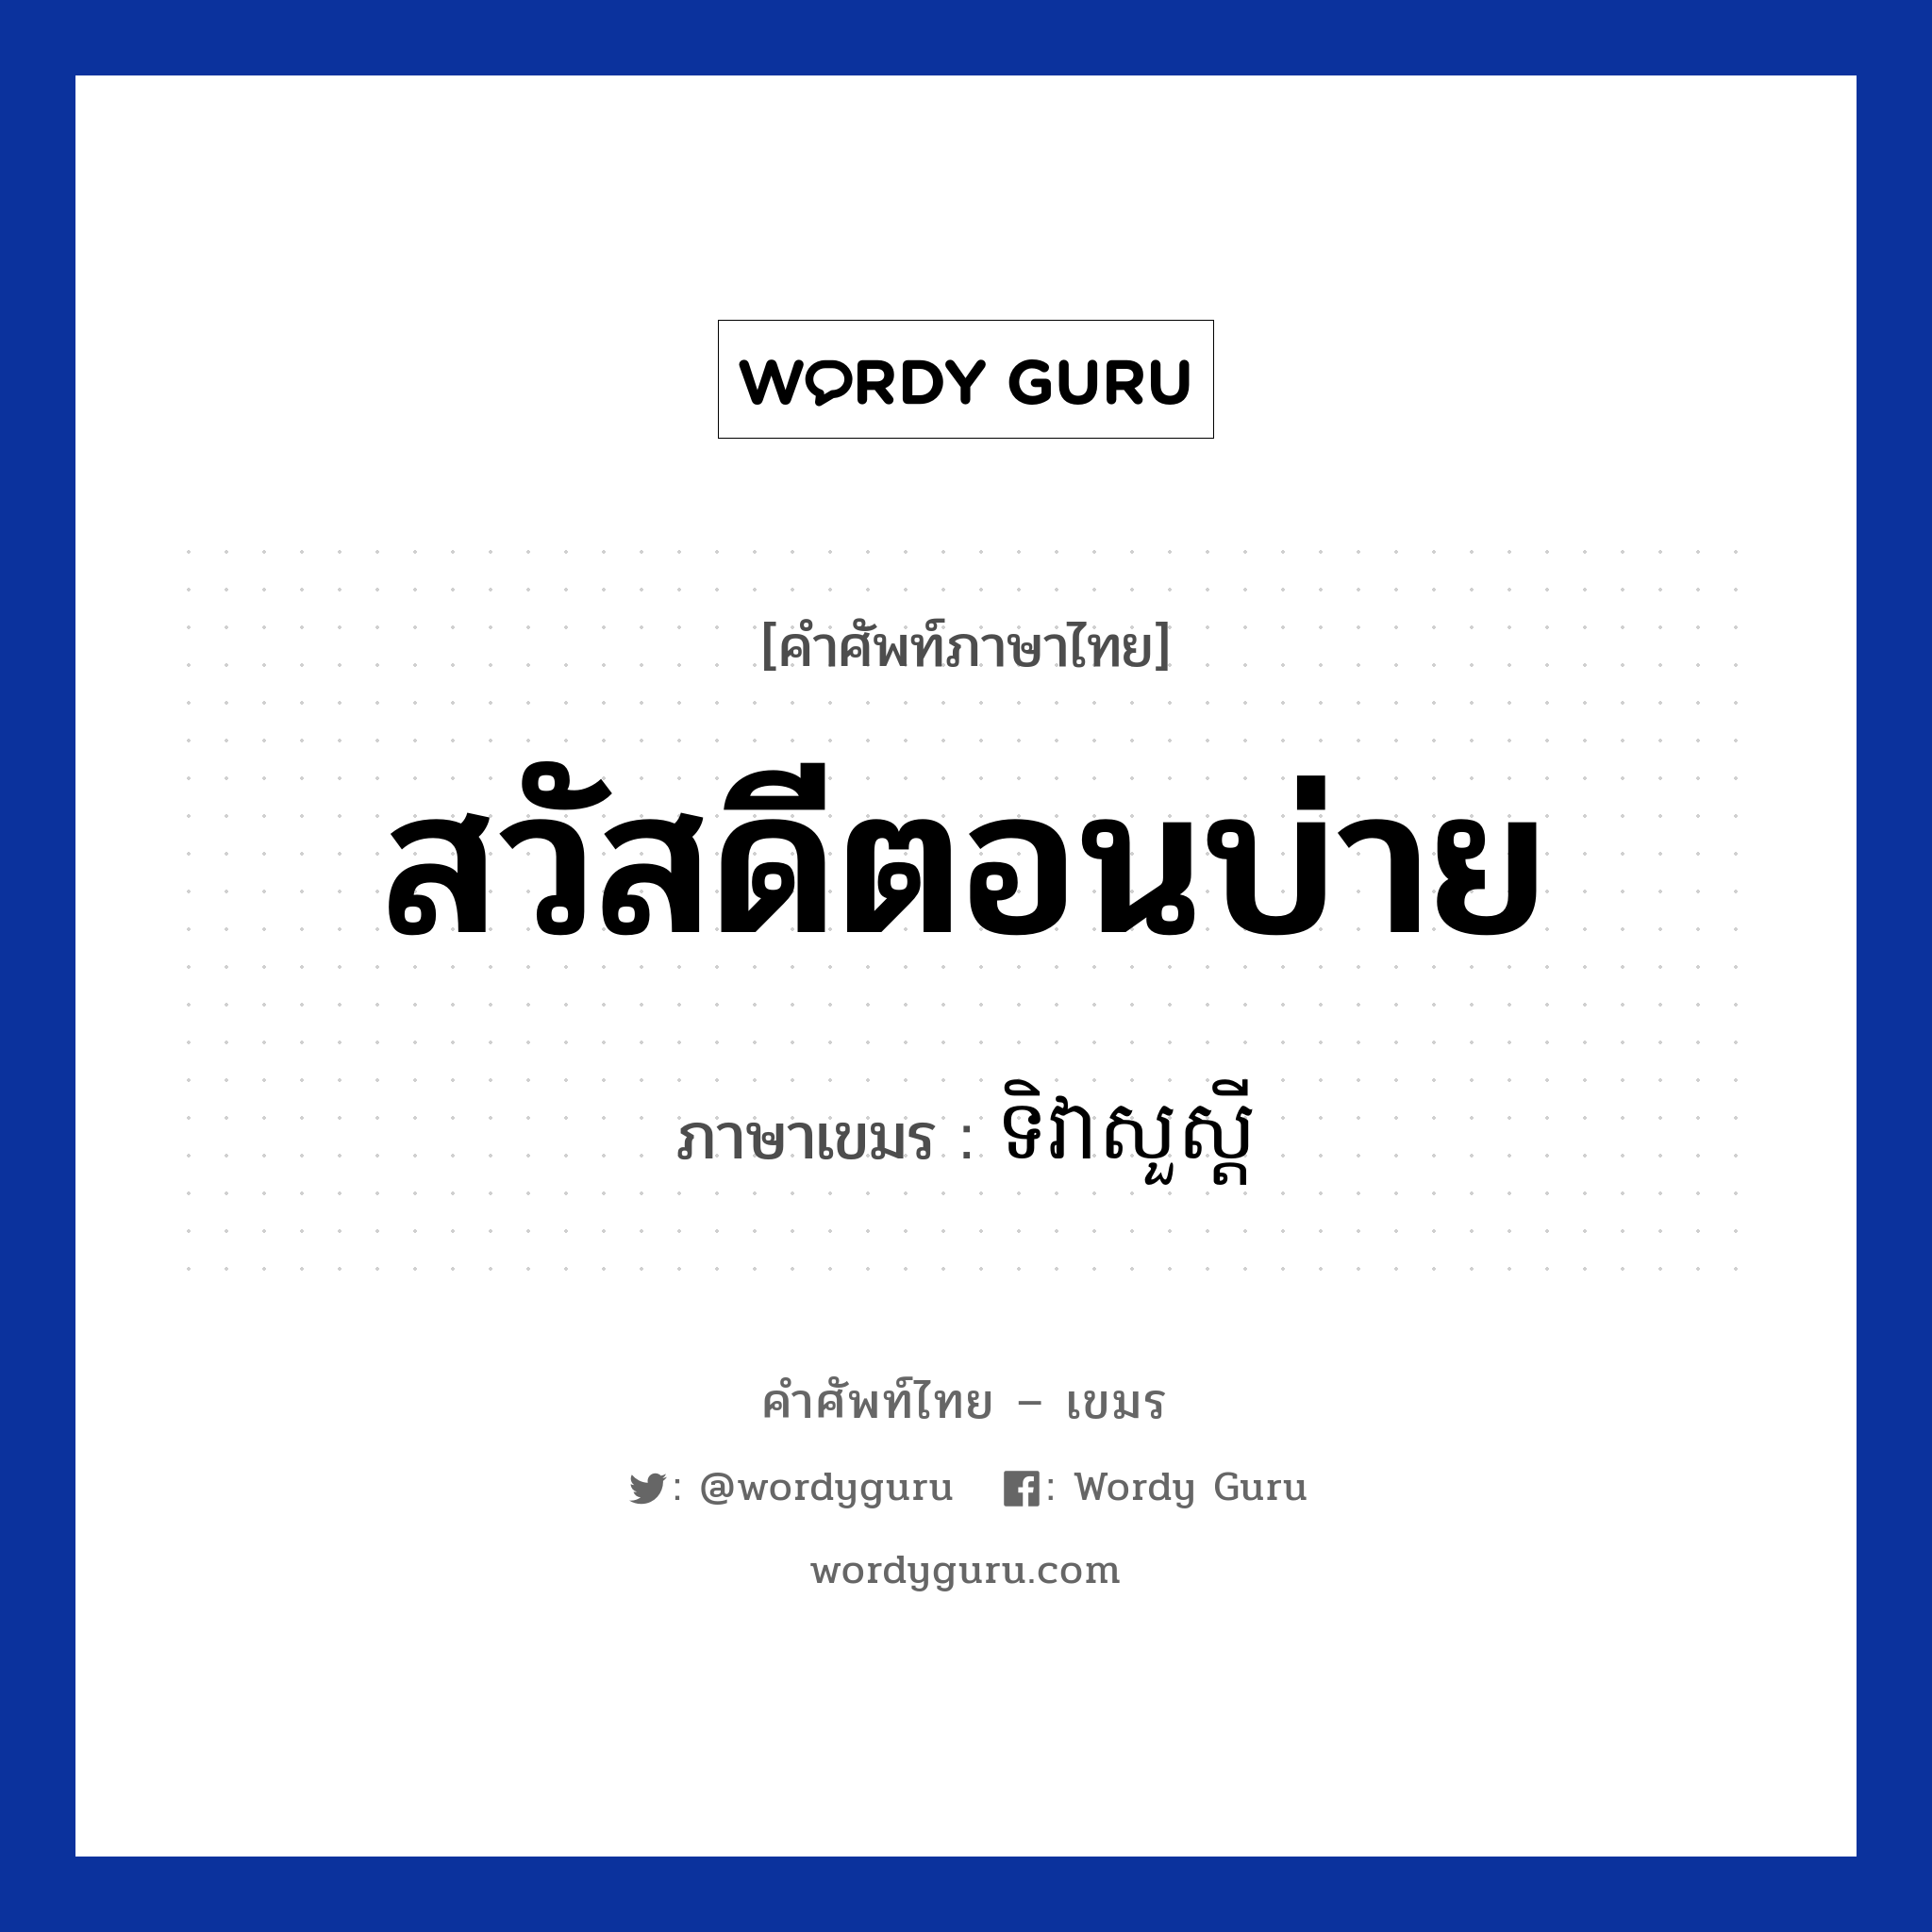 สวัสดีตอนบ่าย ภาษาเขมรคืออะไร, คำศัพท์ภาษาไทย - เขมร สวัสดีตอนบ่าย ภาษาเขมร ទិវាសួស្ដី หมวด ทักทาย Tivea suo sdei หมวด ทักทาย